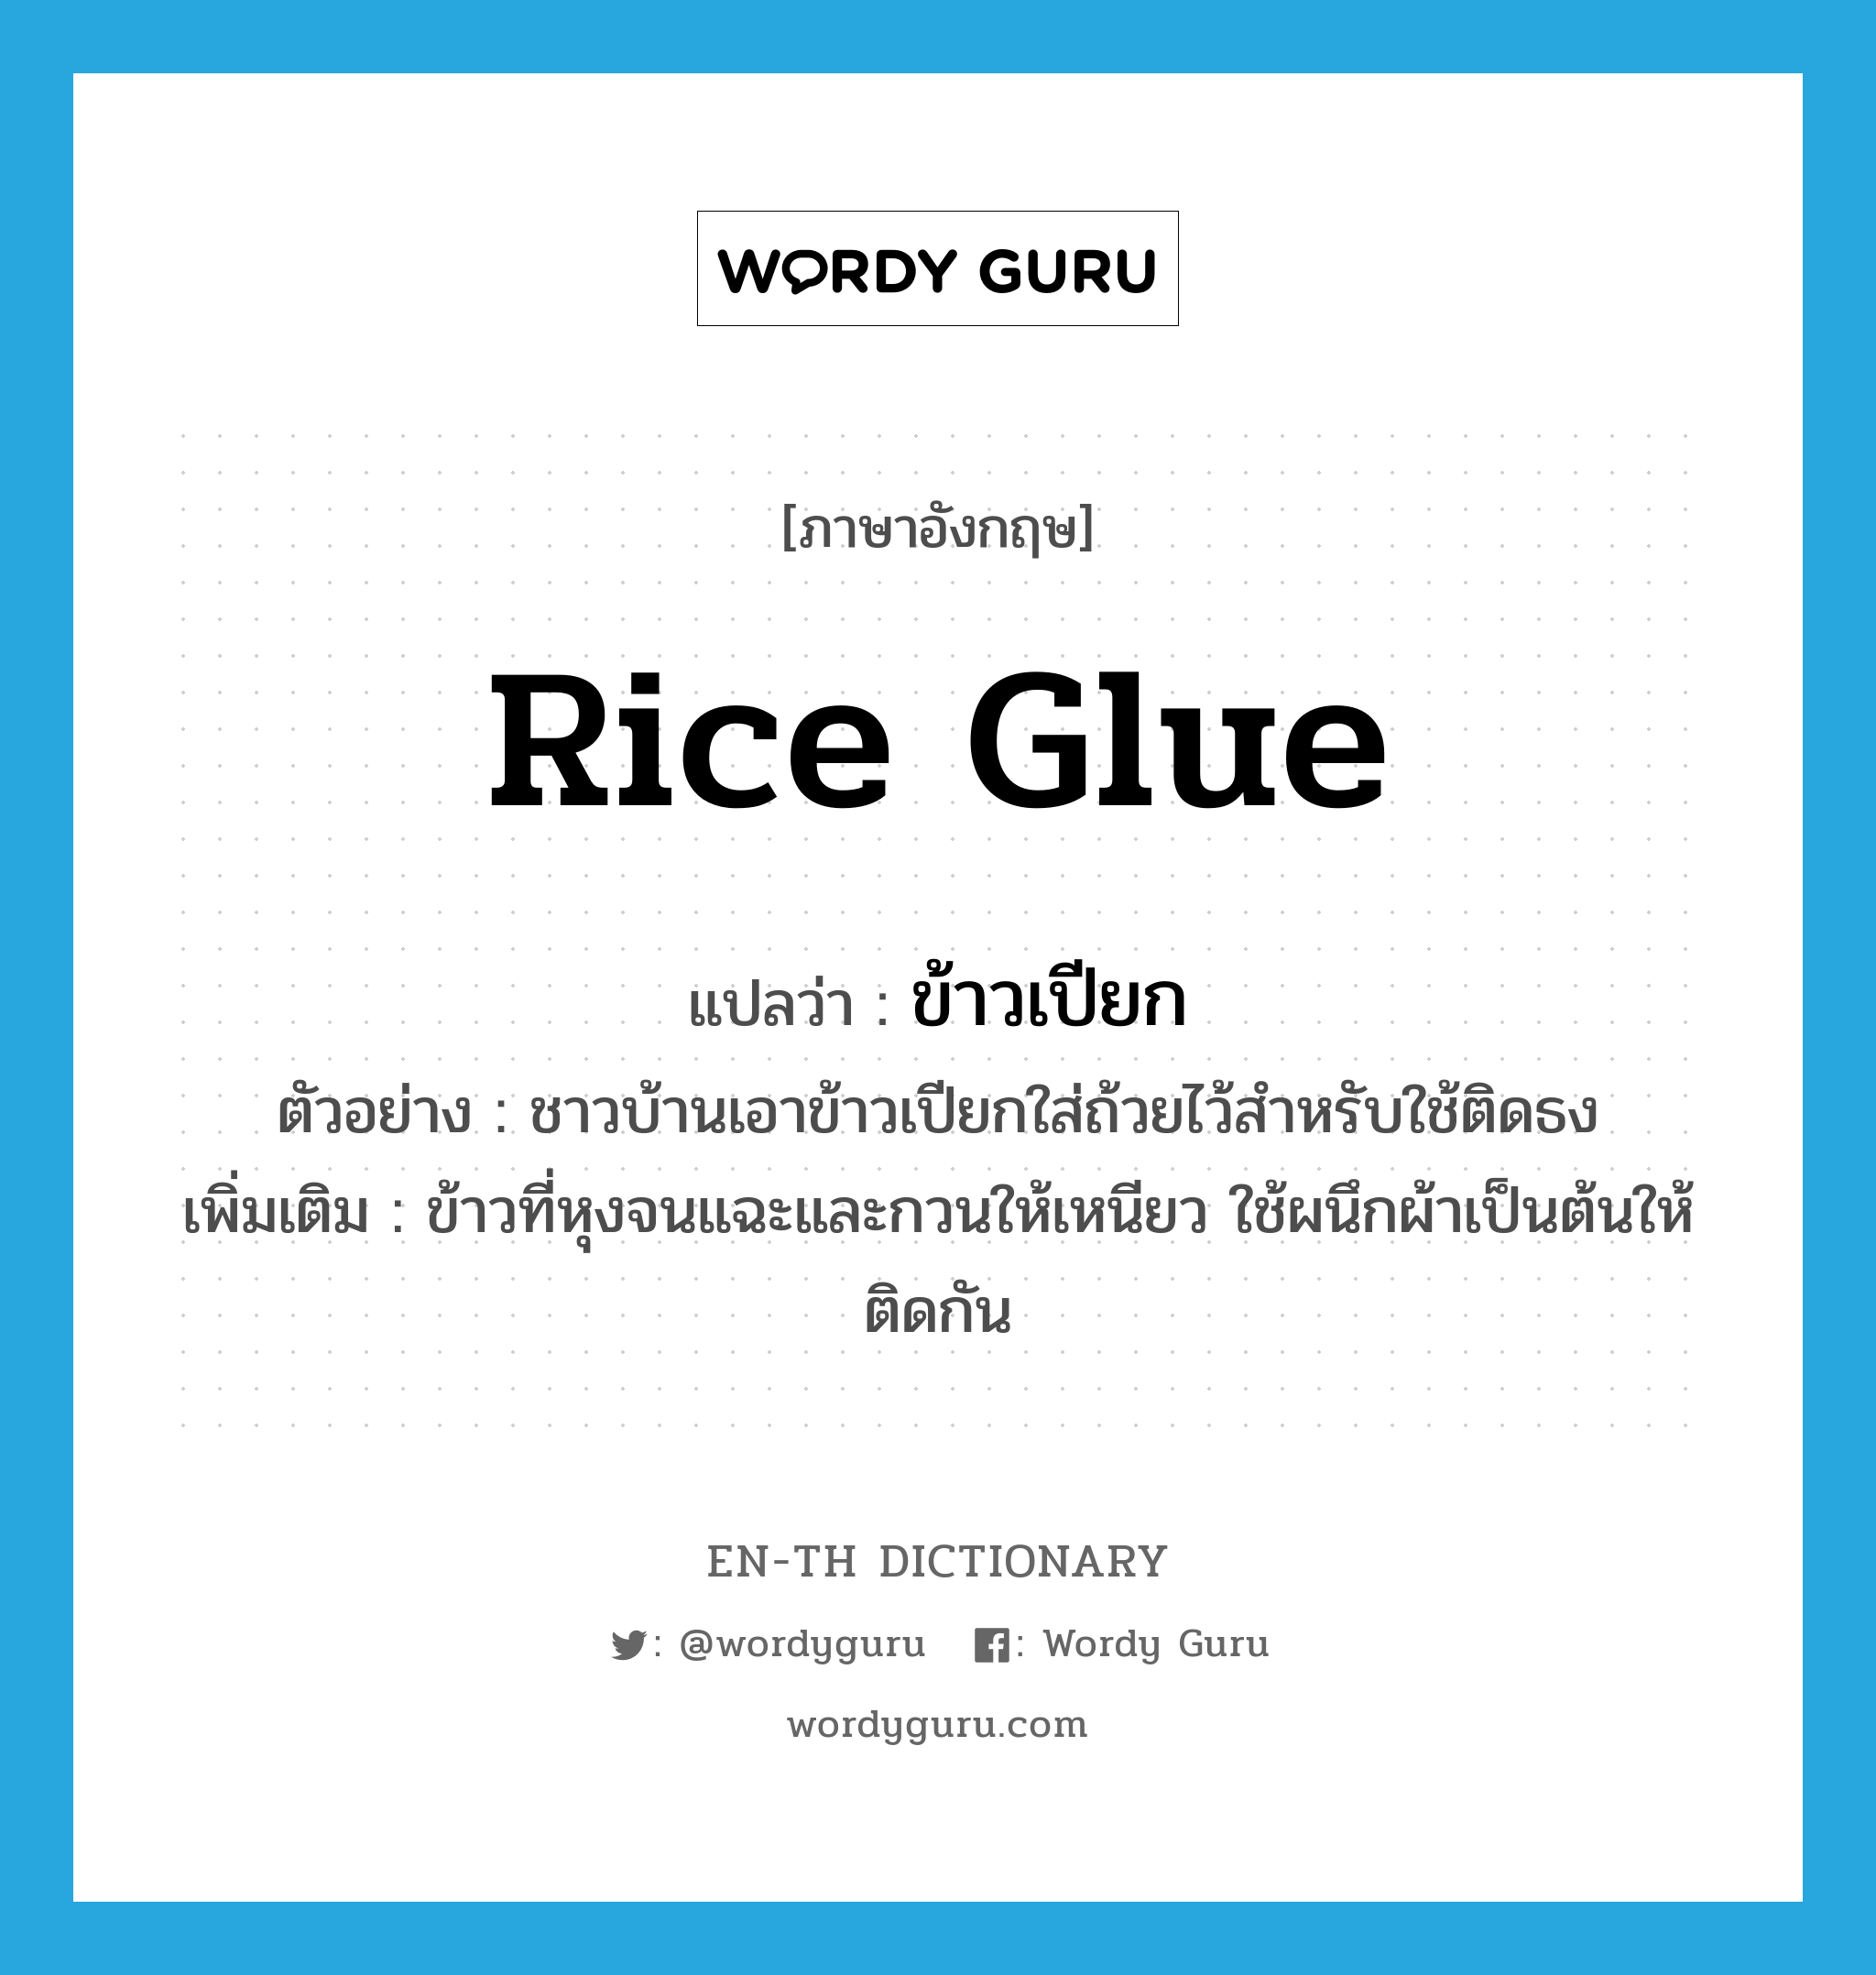 rice glue แปลว่า?, คำศัพท์ภาษาอังกฤษ rice glue แปลว่า ข้าวเปียก ประเภท N ตัวอย่าง ชาวบ้านเอาข้าวเปียกใส่ถ้วยไว้สำหรับใช้ติดธง เพิ่มเติม ข้าวที่หุงจนแฉะและกวนให้เหนียว ใช้ผนึกผ้าเป็นต้นให้ติดกัน หมวด N